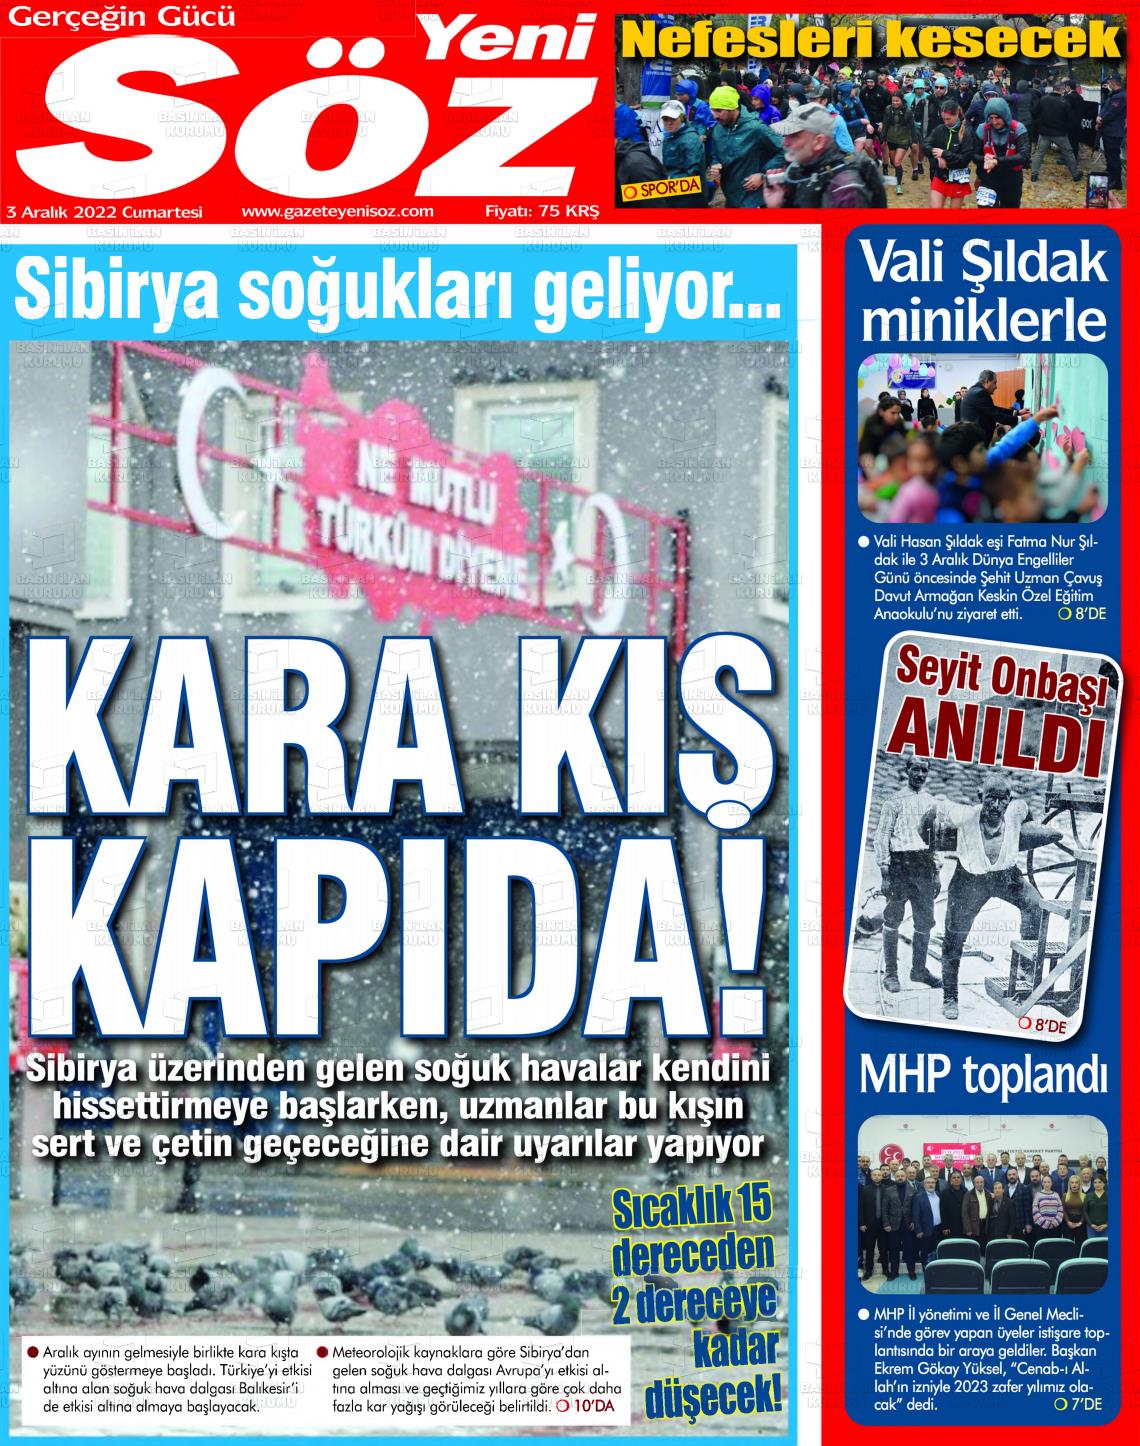 03 Aralık 2022 Yeni Söz Gazete Manşeti